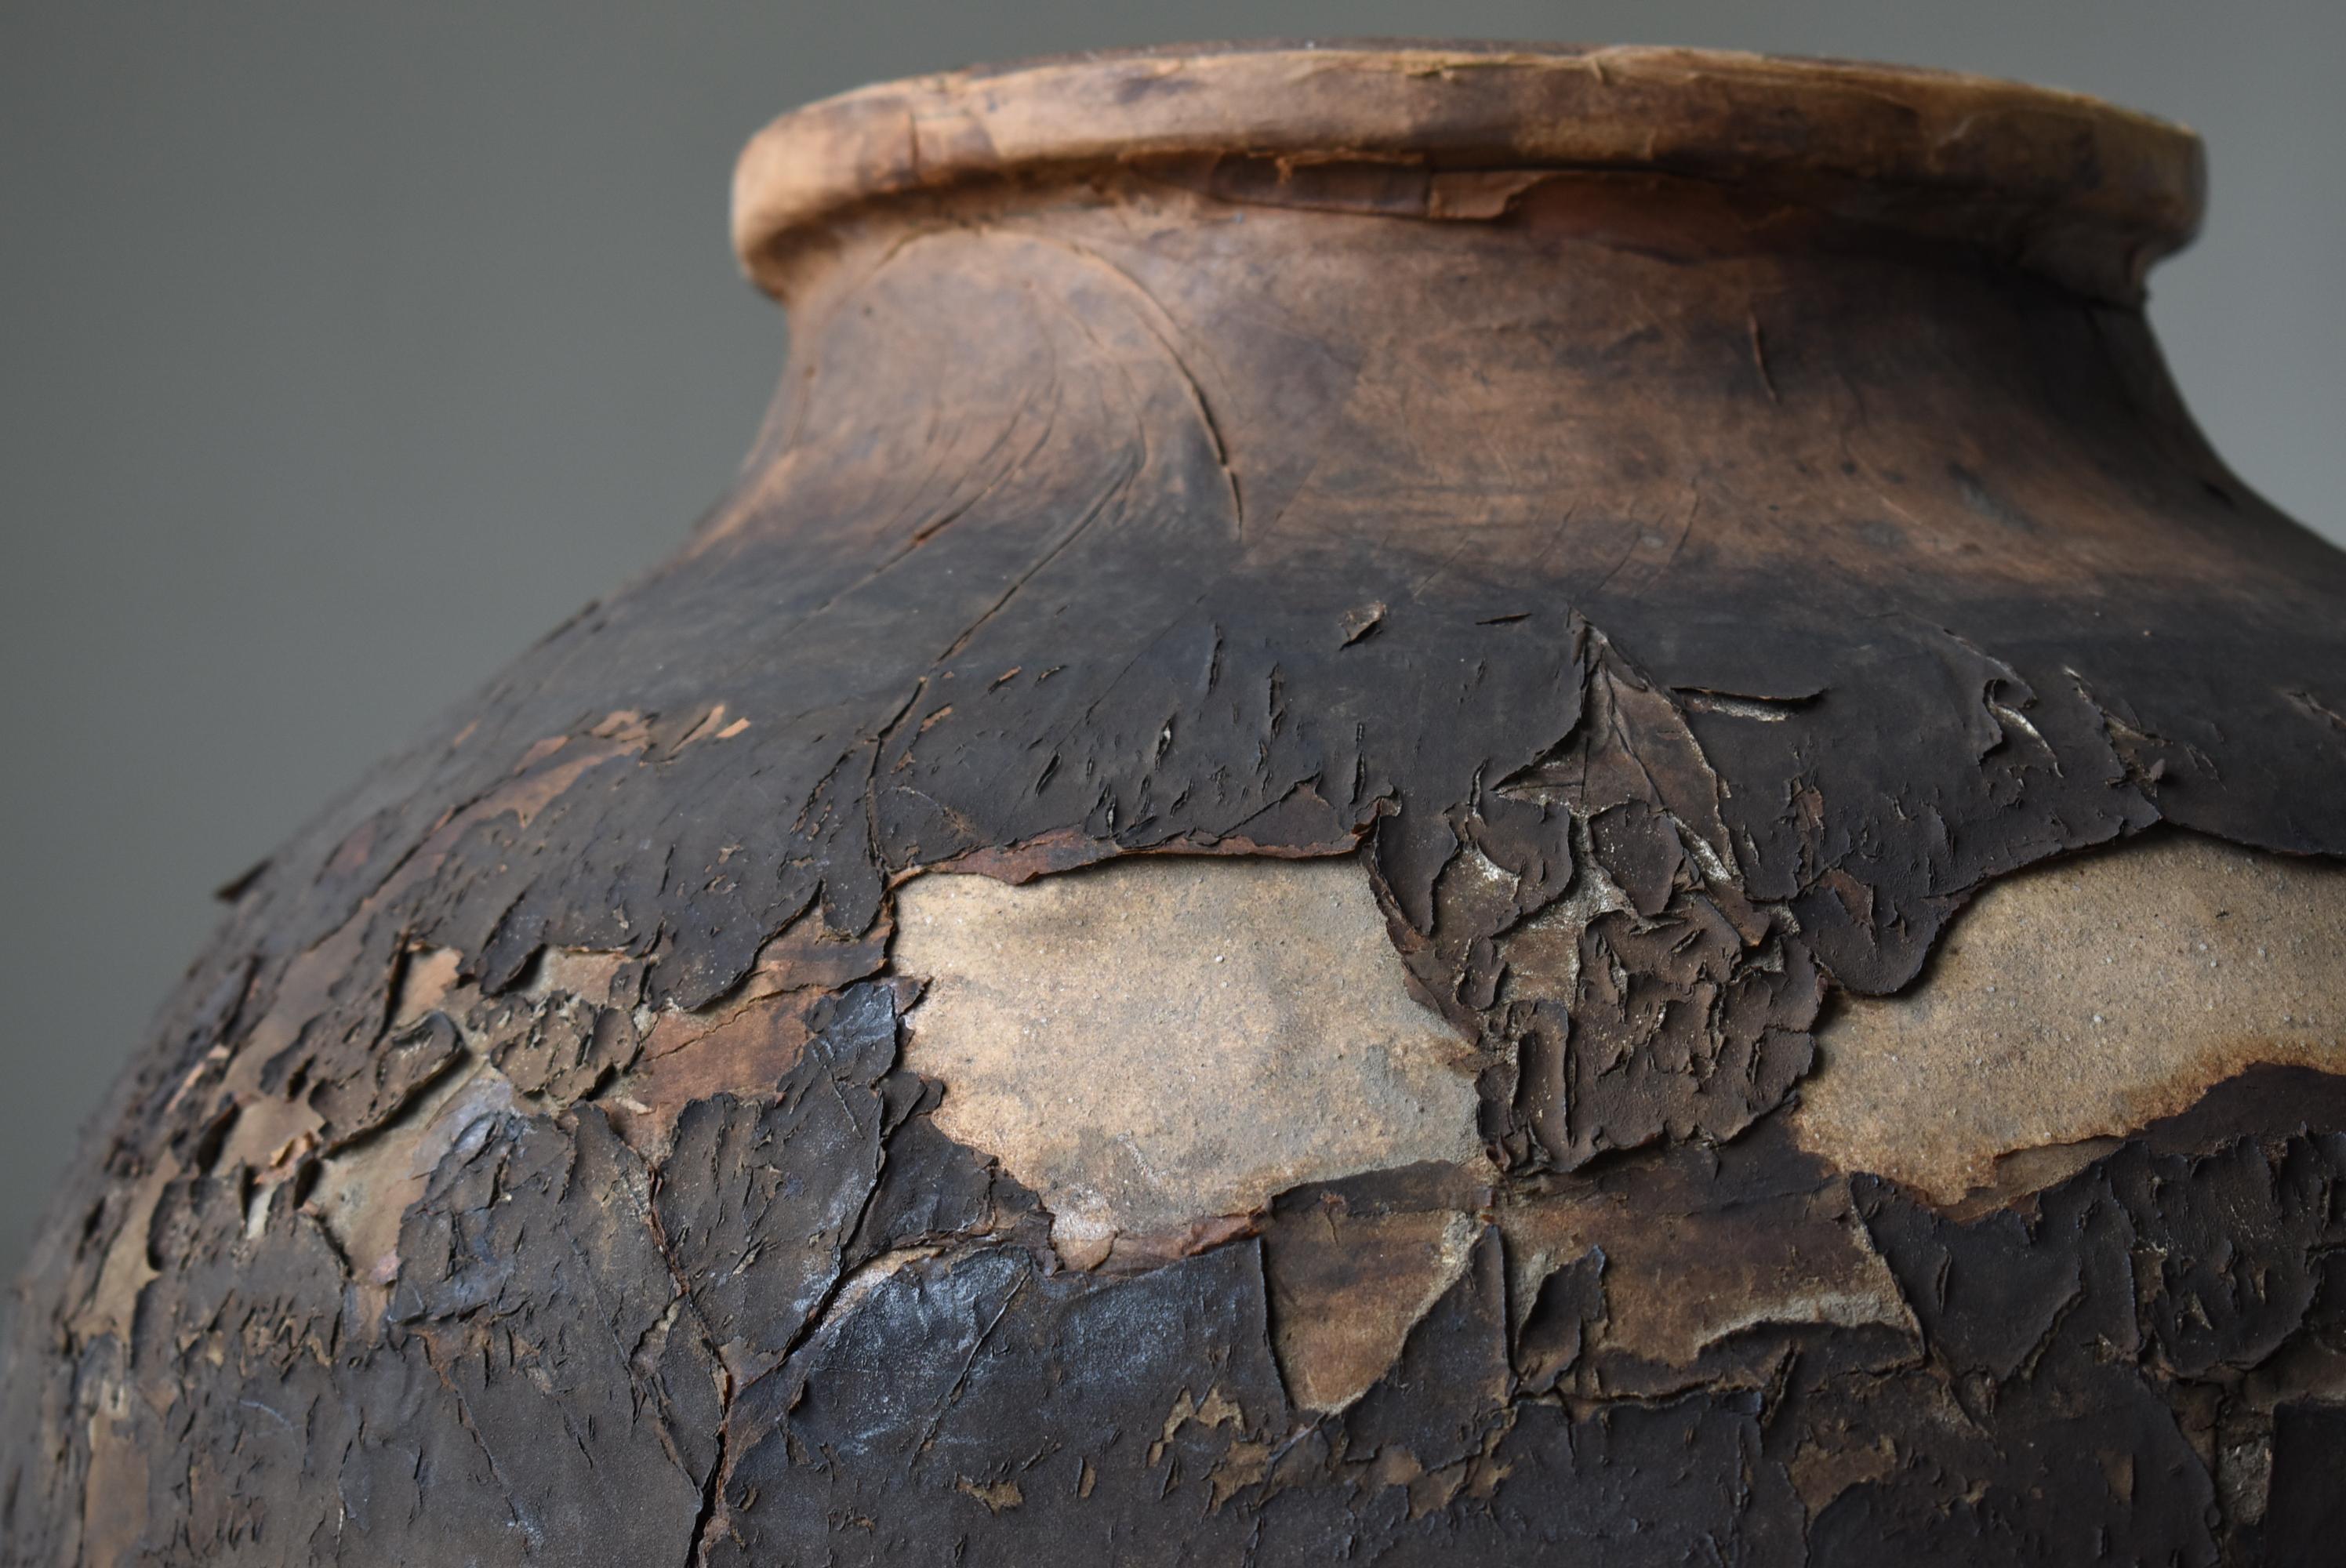 Japanese Antique Large Pottery Vase 1860s-1900s / Flower Vase Wabisabi 3